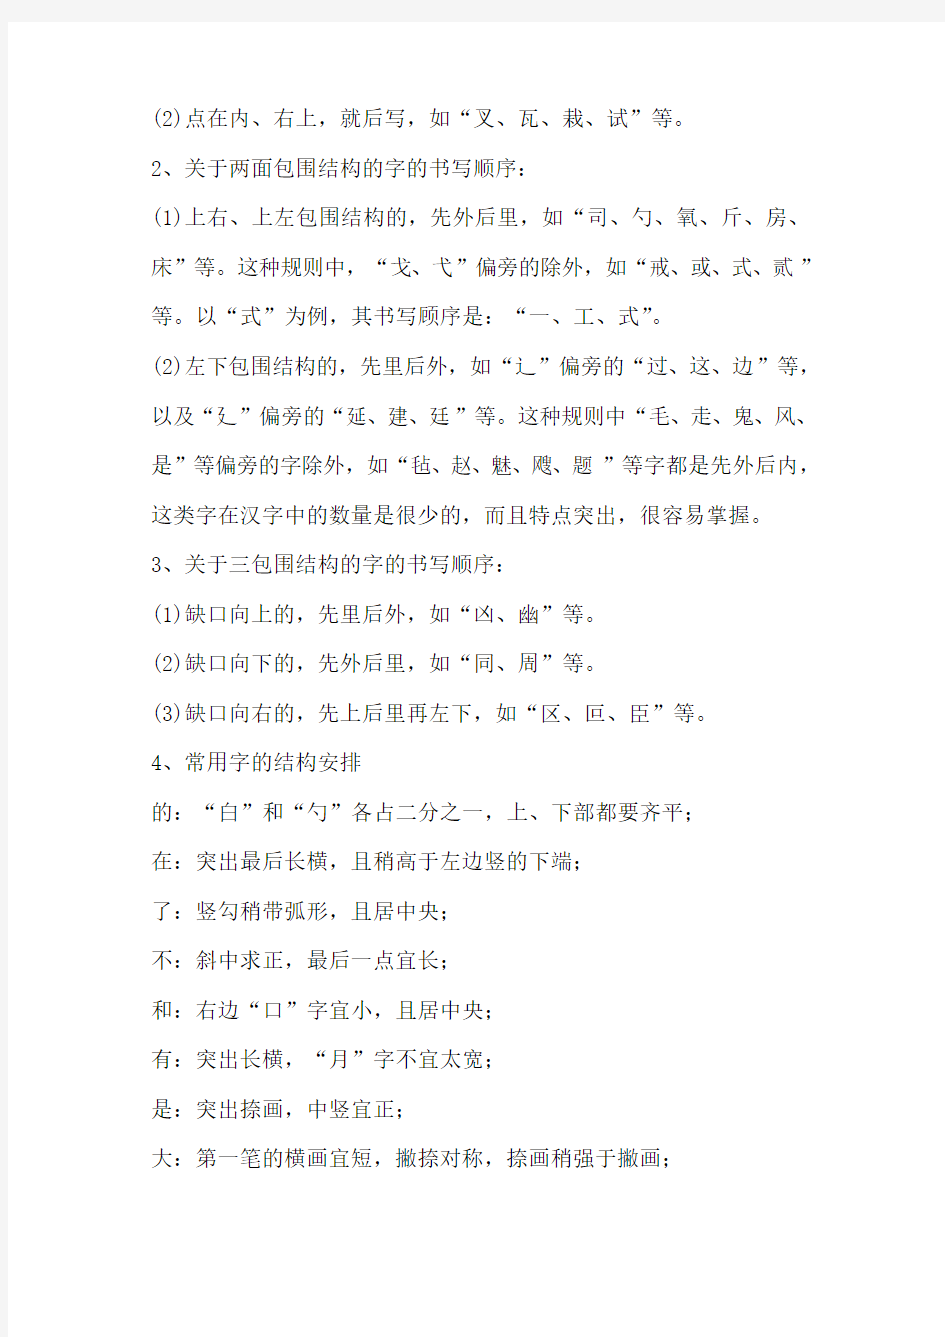 (考试专用)常用汉字笔顺规范--权威发布0304190018